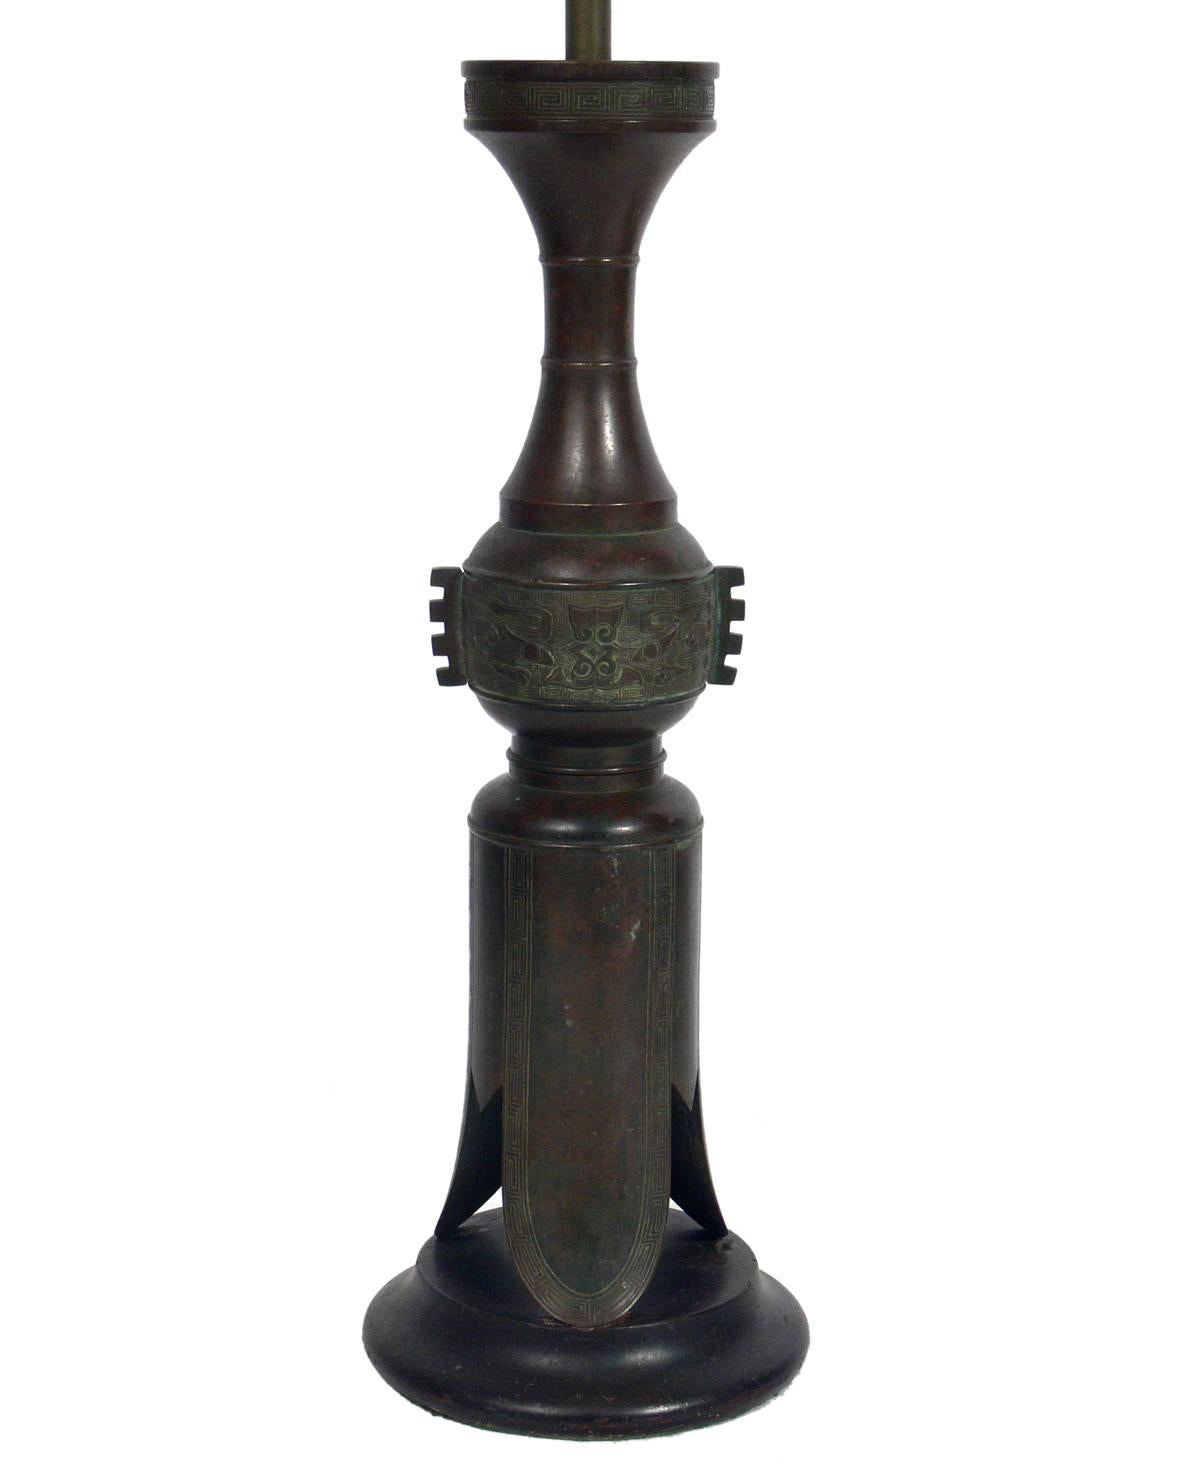 Sélection de lampes asiatiques en bronze, probablement japonaises, au moins vers les années 1950, peut-être beaucoup plus tôt. La lampe illustrée à gauche mesure 40.5 